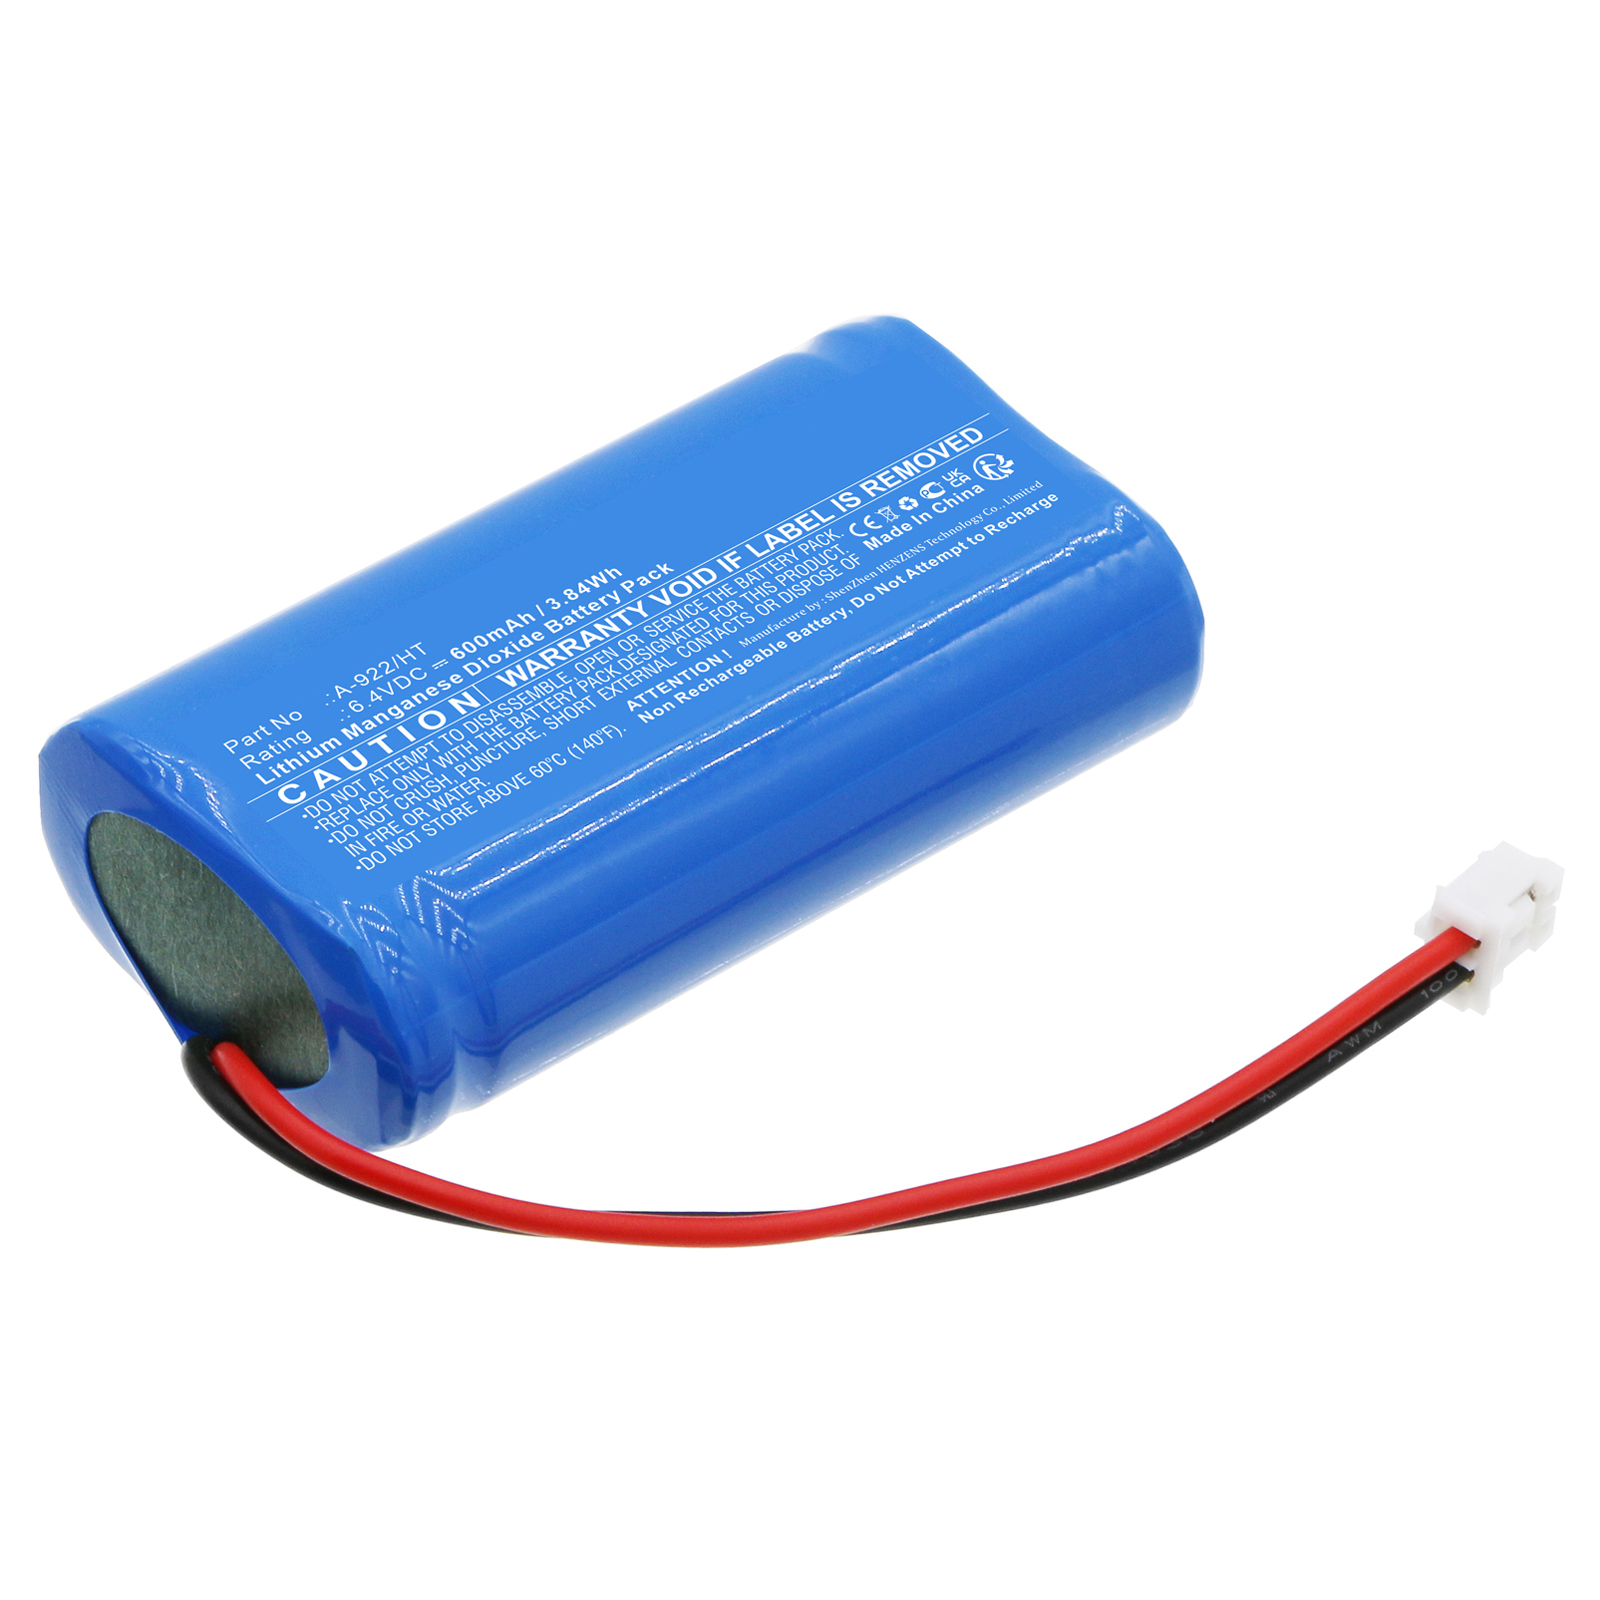 Synergy Digital Emergency Lighting Battery, Compatible with IRON LUX A-922/HT Emergency Lighting Battery (LiFePO4, 6.4V, 600mAh)